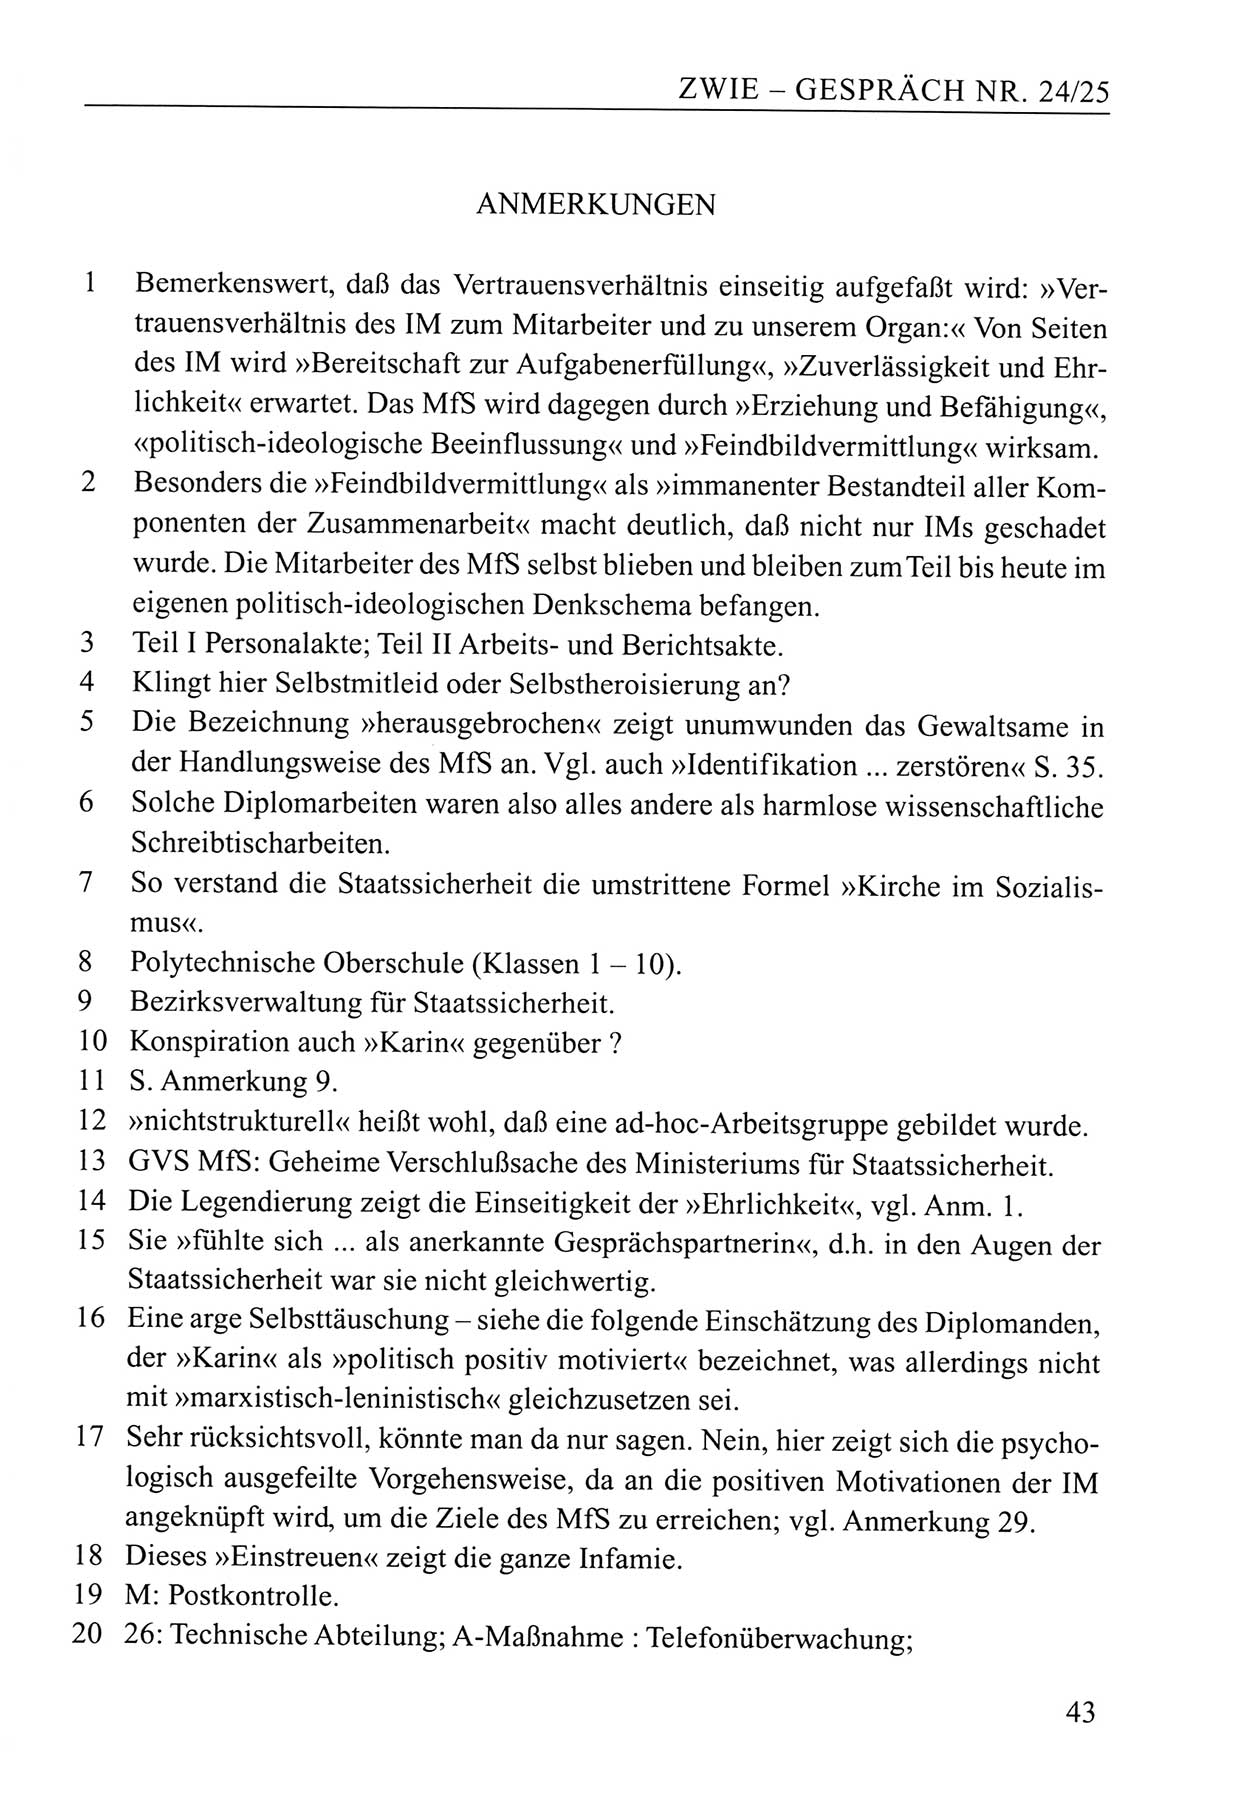 Zwie-Gespräch, Beiträge zum Umgang mit der Staatssicherheits-Vergangenheit [Deutsche Demokratische Republik (DDR)], Ausgabe Nr. 24/25, Berlin 1994, Seite 43 (Zwie-Gespr. Ausg. 24/25 1994, S. 43)